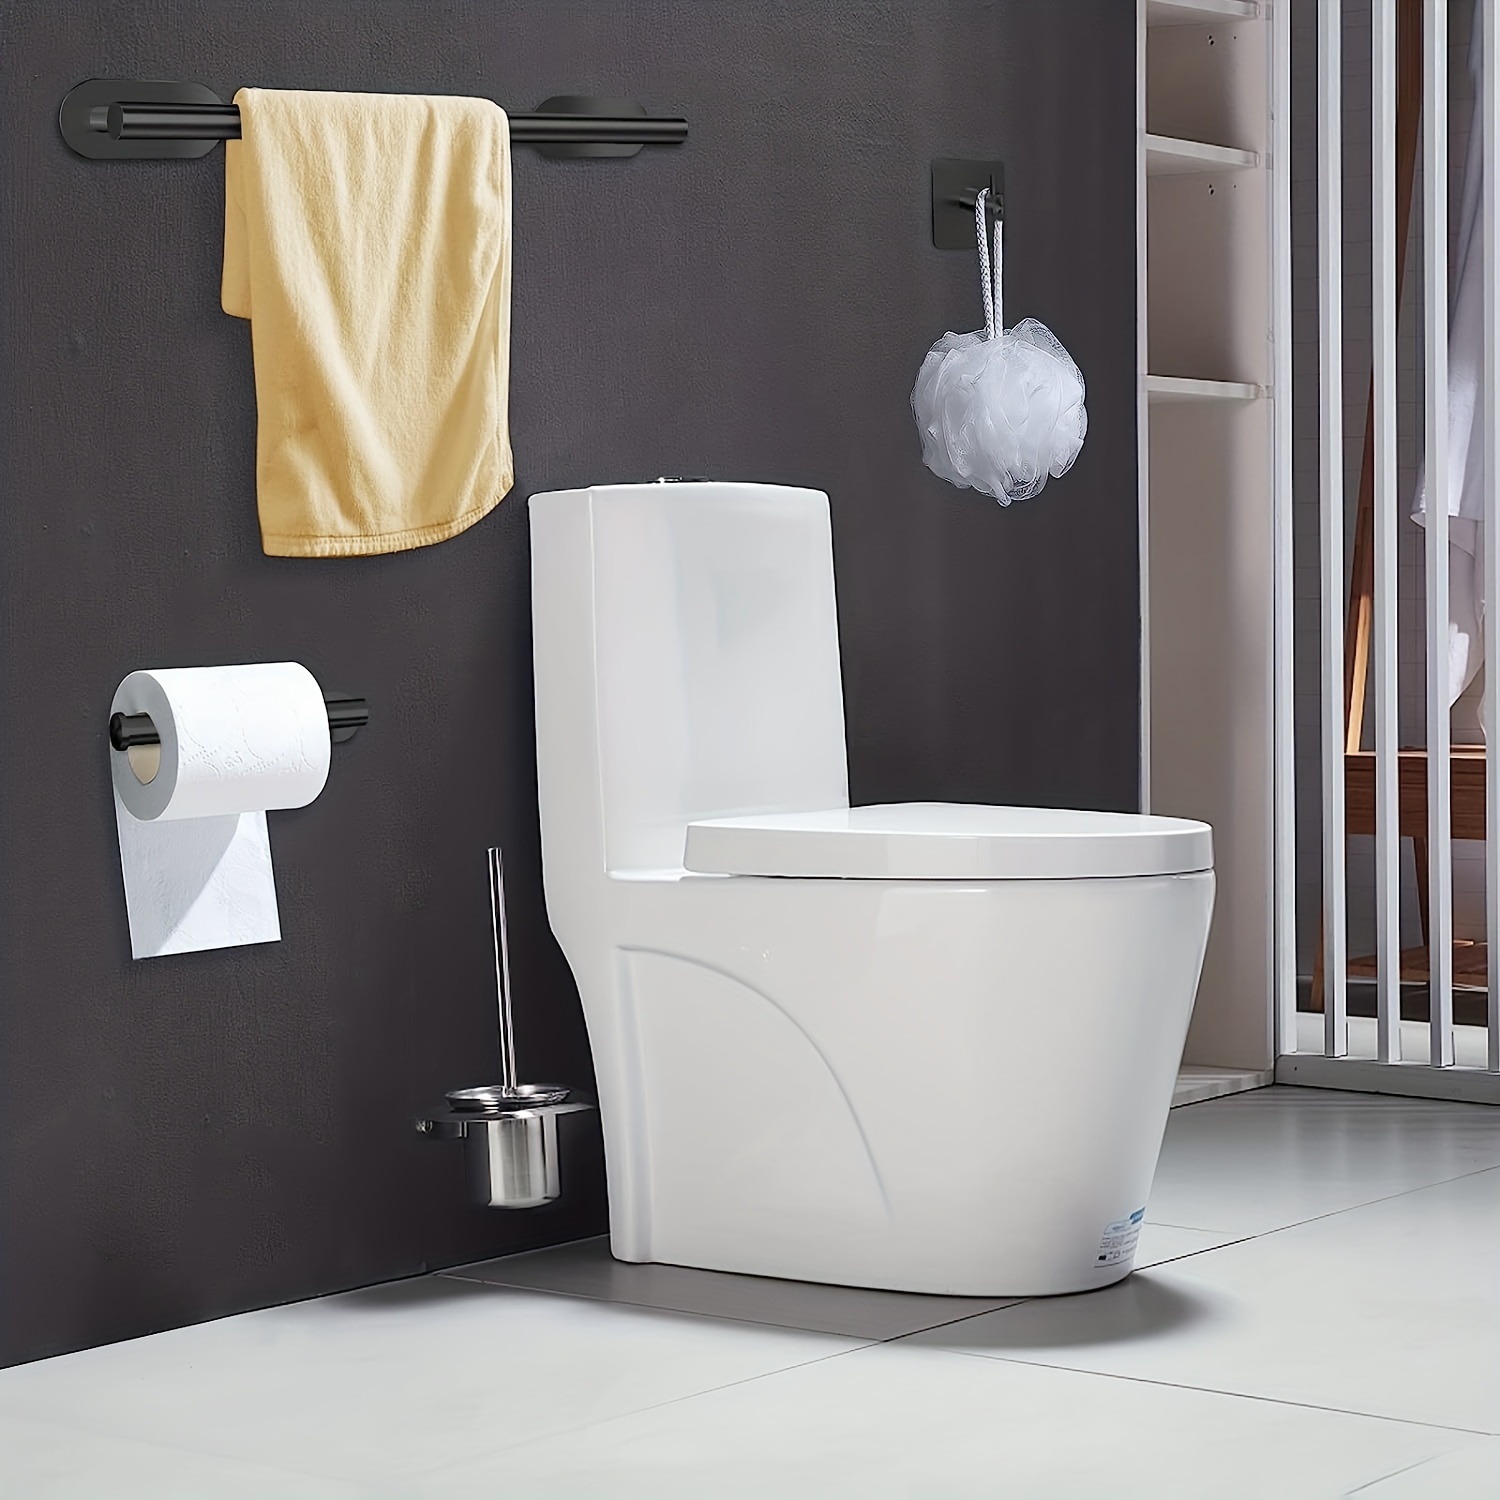  WRJAHCG Juego de toalleros para baño, estante de ducha,  accesorios espaciales de aluminio no perforado, juego de colgantes de baño,  toallero de papel, toallero de almacenamiento, juego de toalleros, B5 